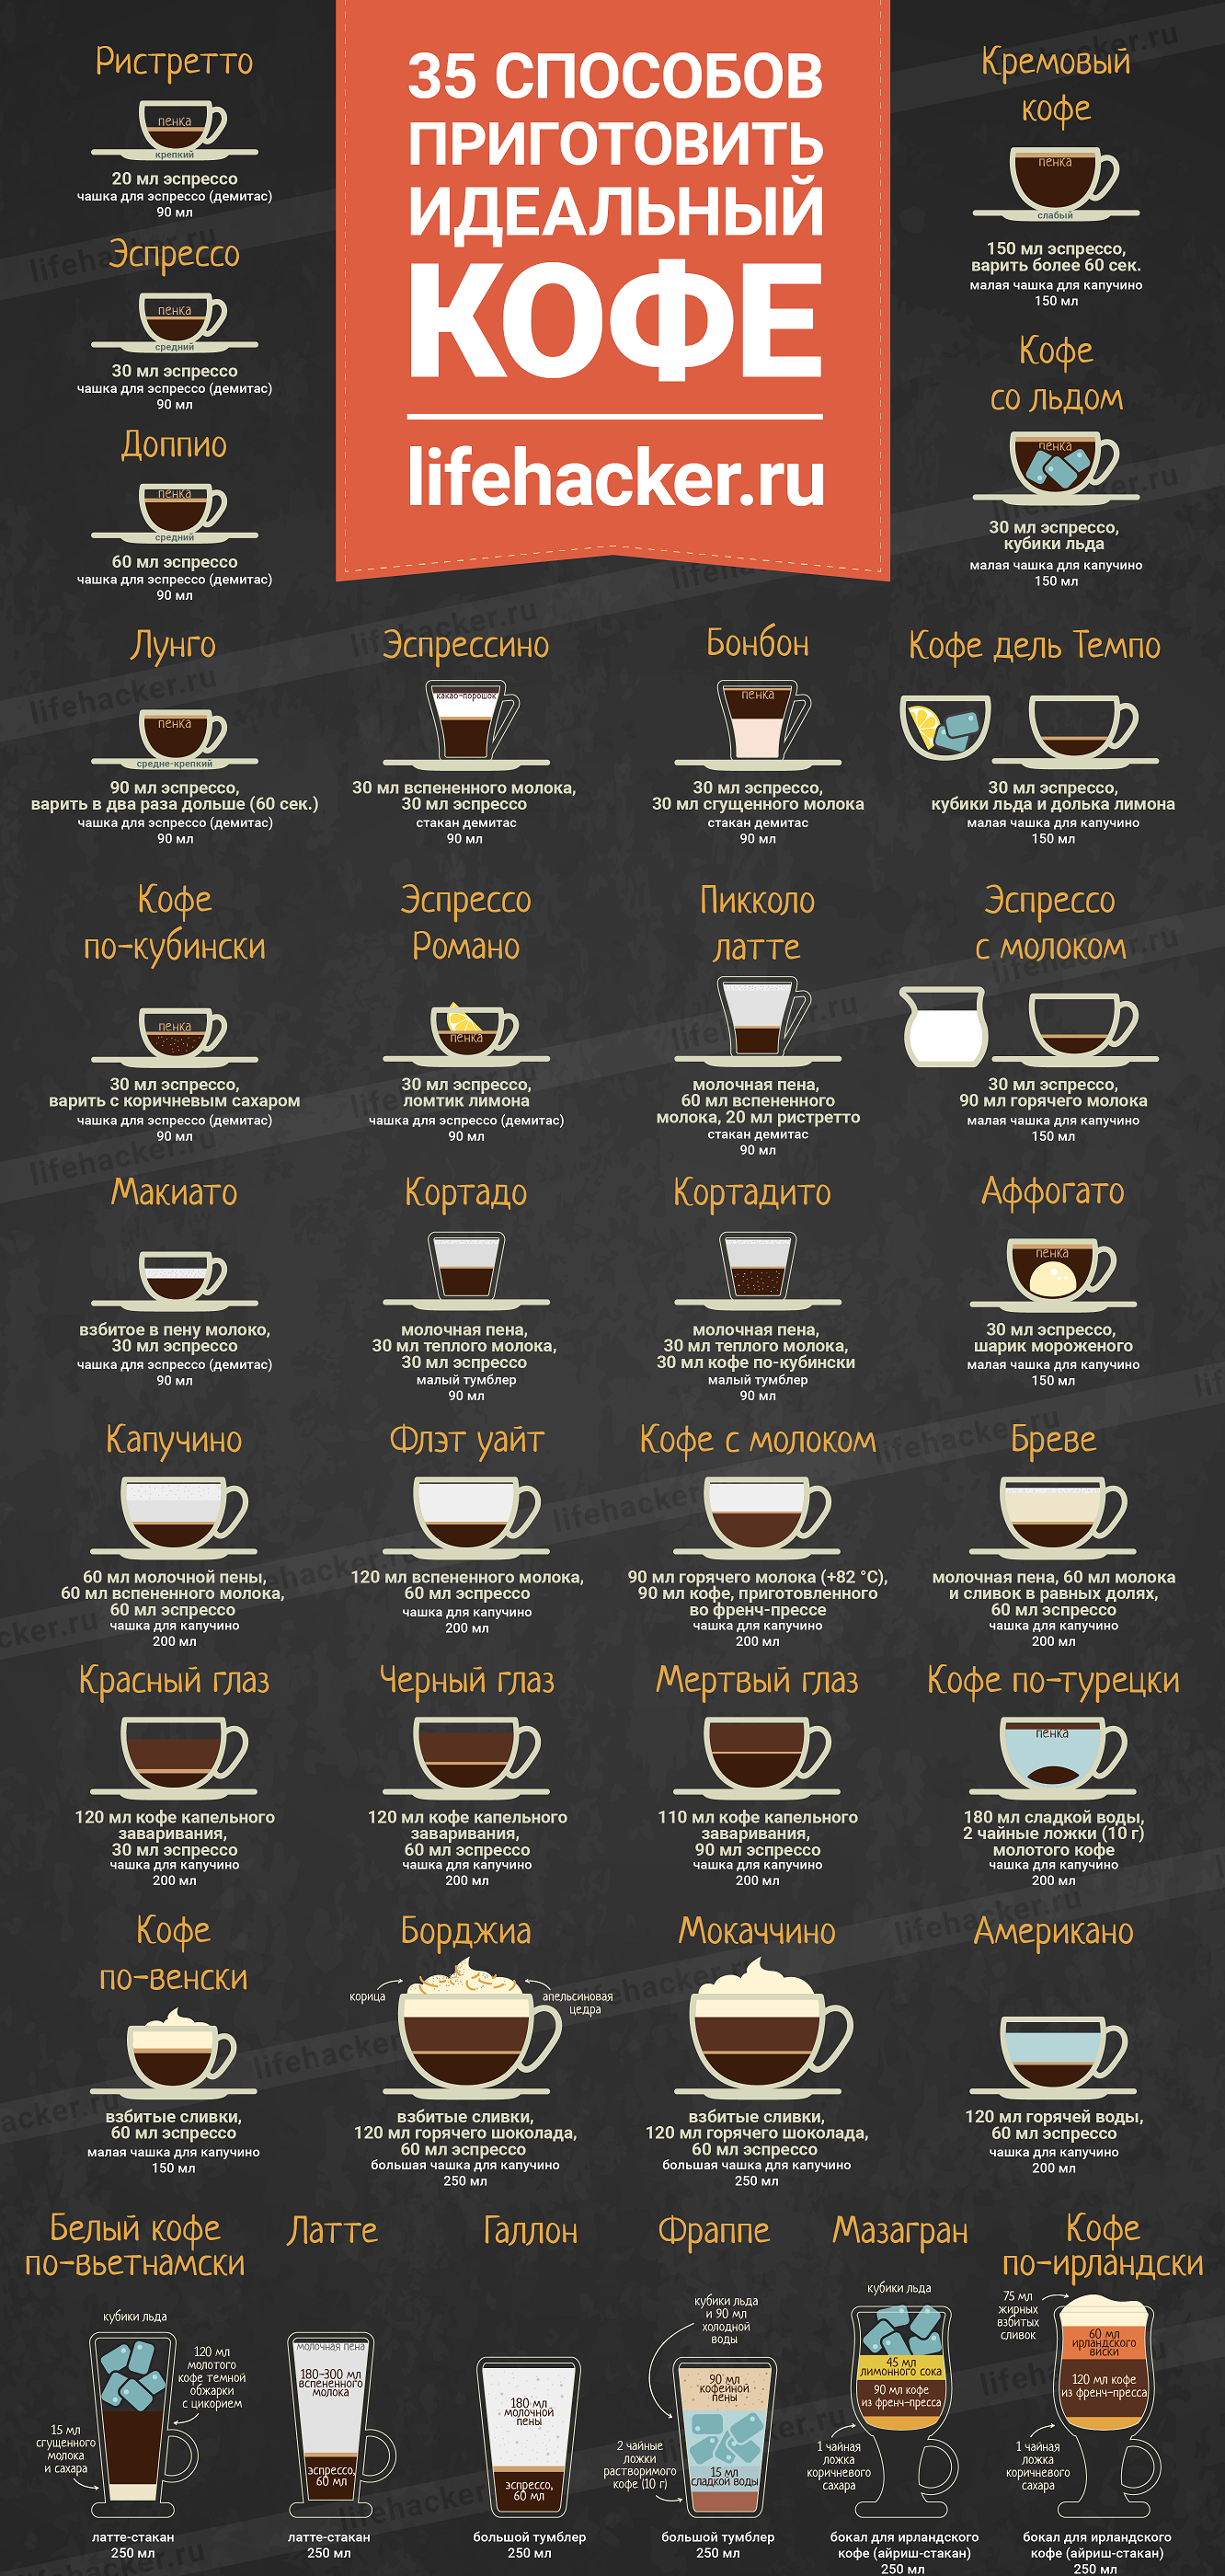 35 способов приготовить идеальный кофе